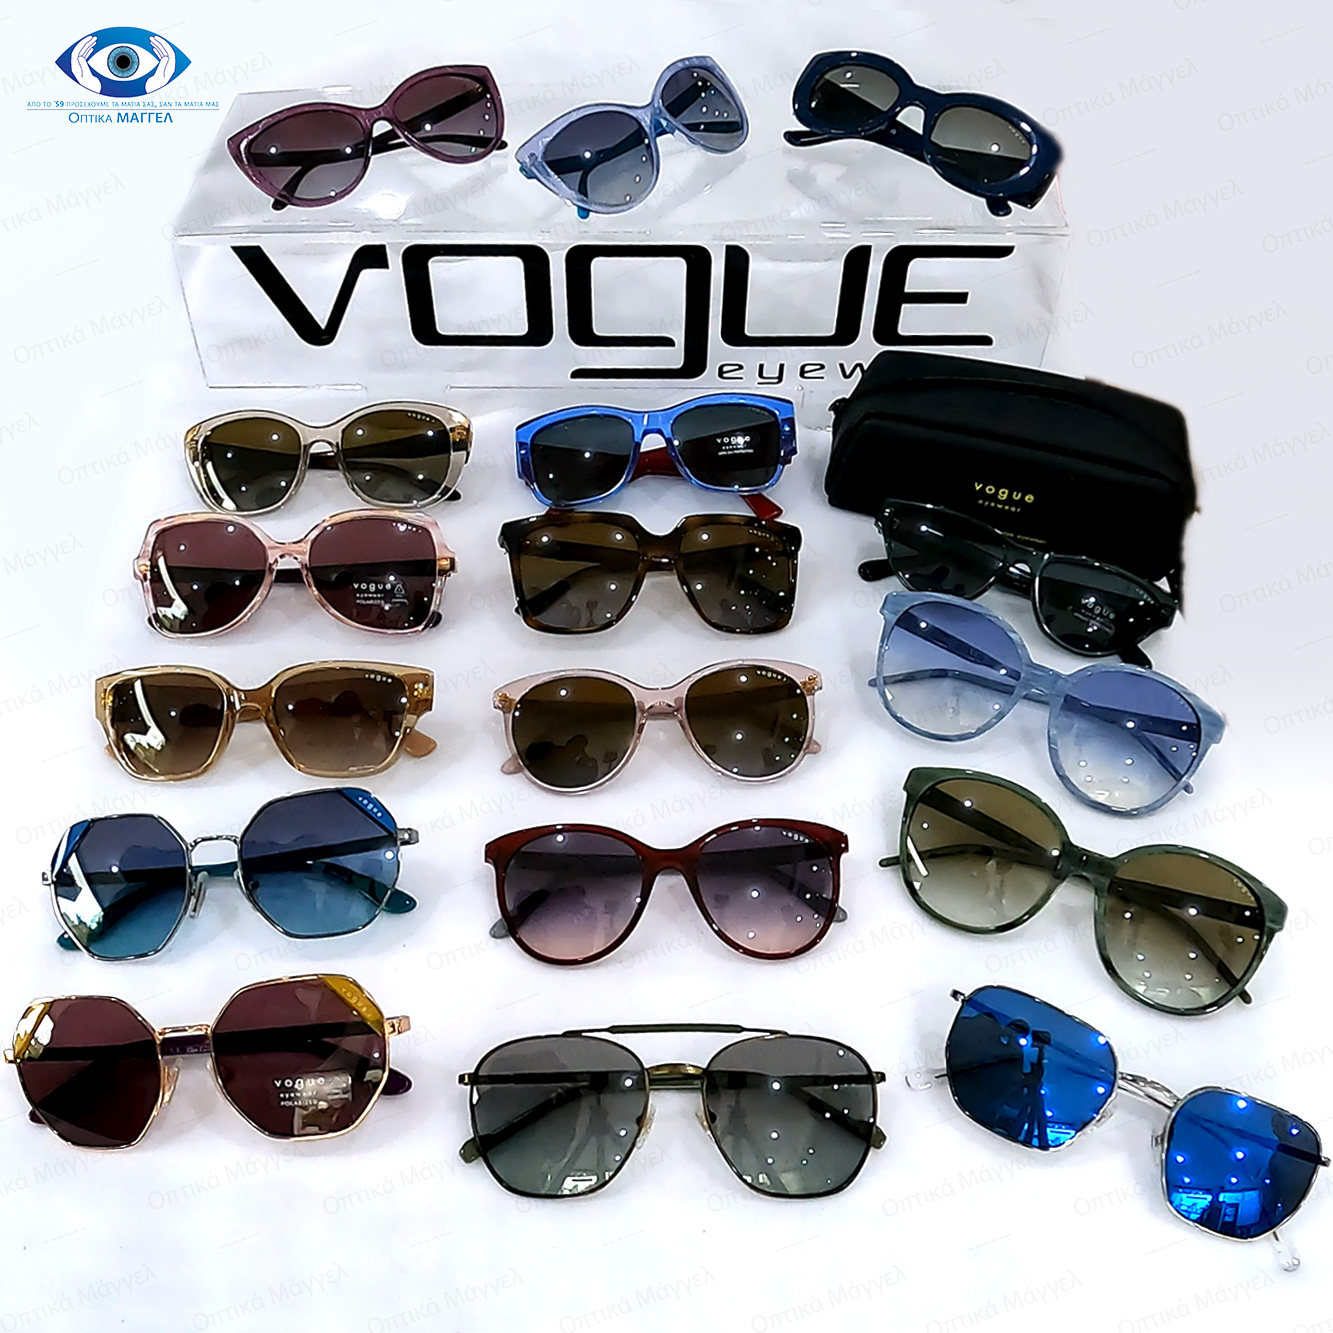 “Unboxing” νέα για το 2023 γυαλιά ηλίου  Vogue!